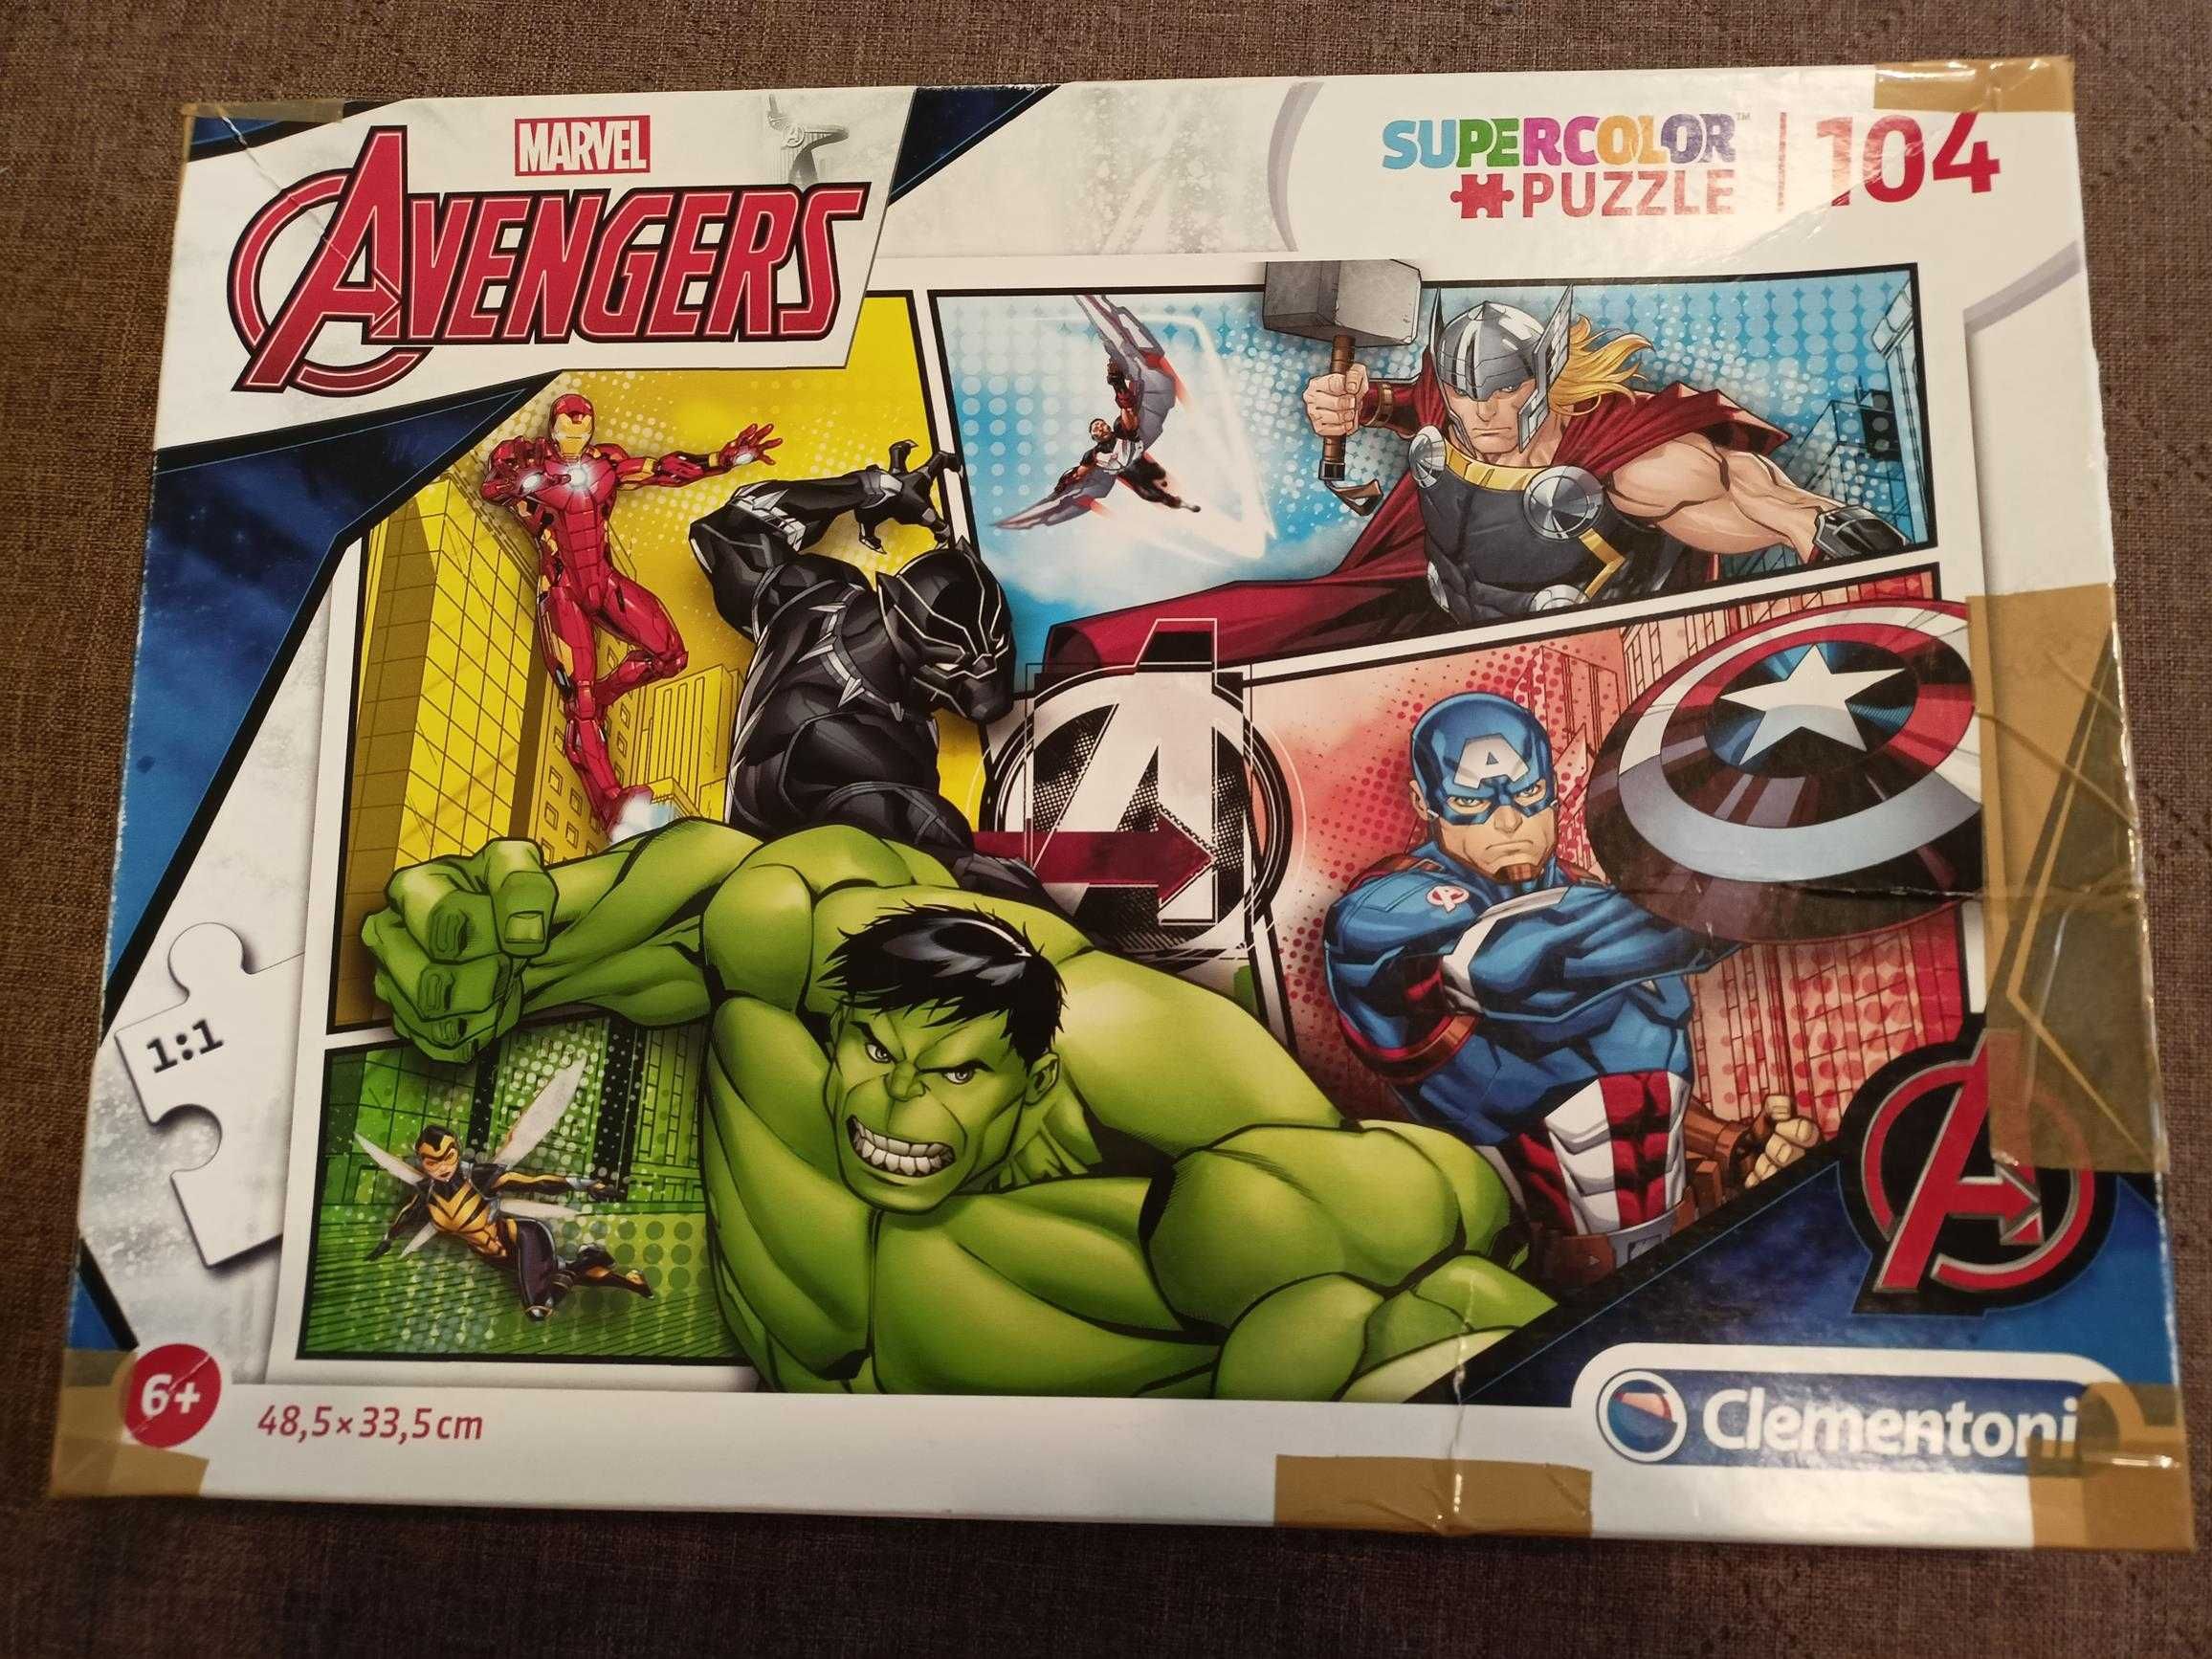 Puzzle Clementoni Avengers